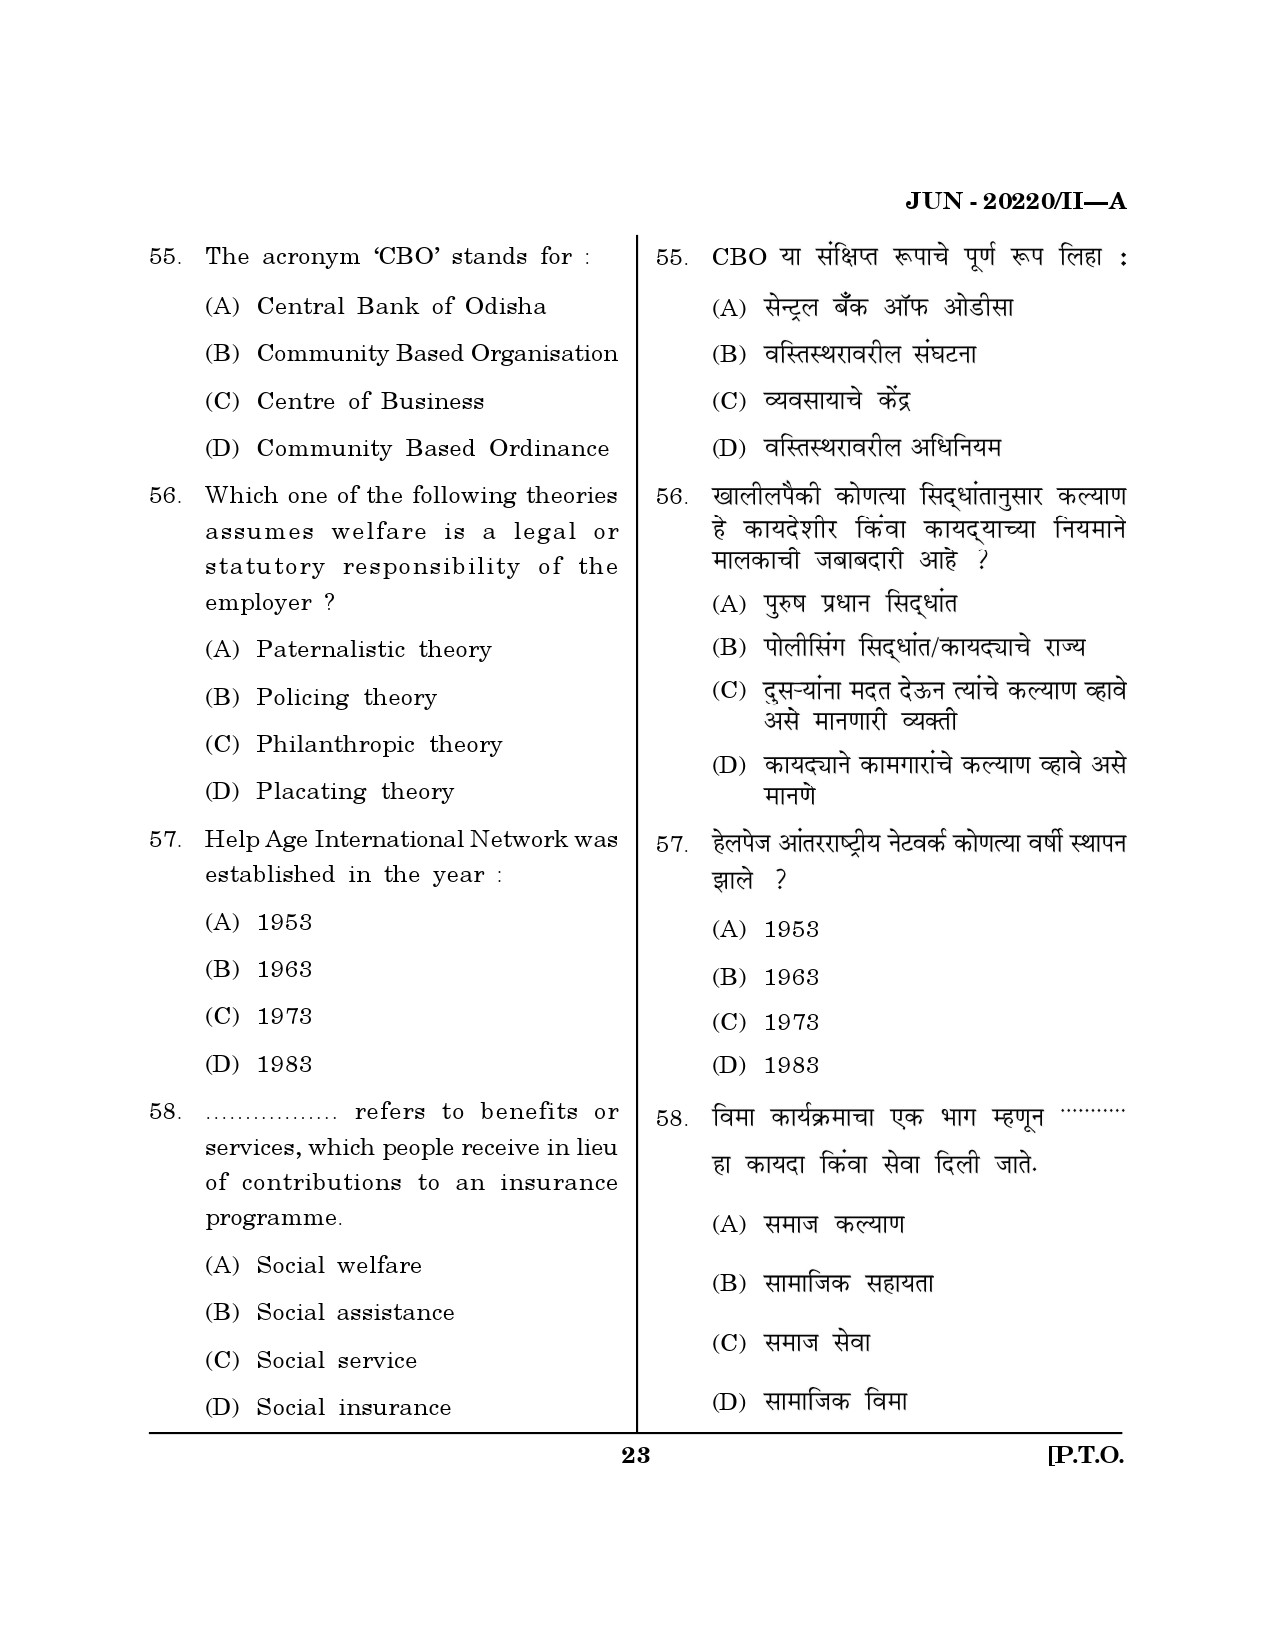 Maharashtra SET Social Work Question Paper II June 2020 22